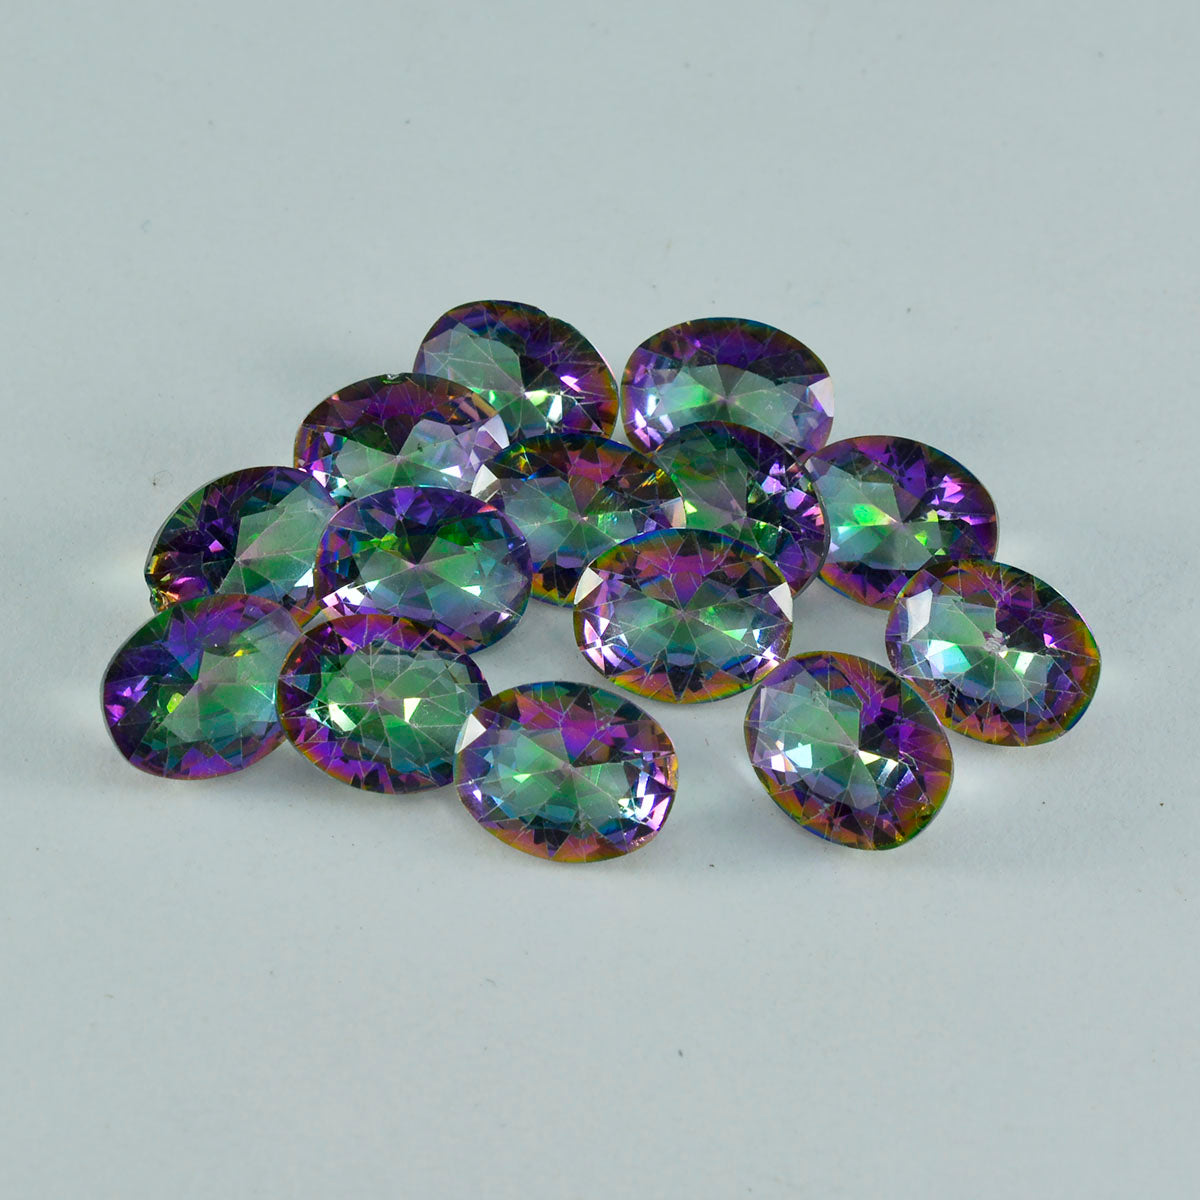 Riyogems 1 pièce de quartz mystique multicolore à facettes 8x10mm de forme ovale, pierres précieuses de qualité attrayantes